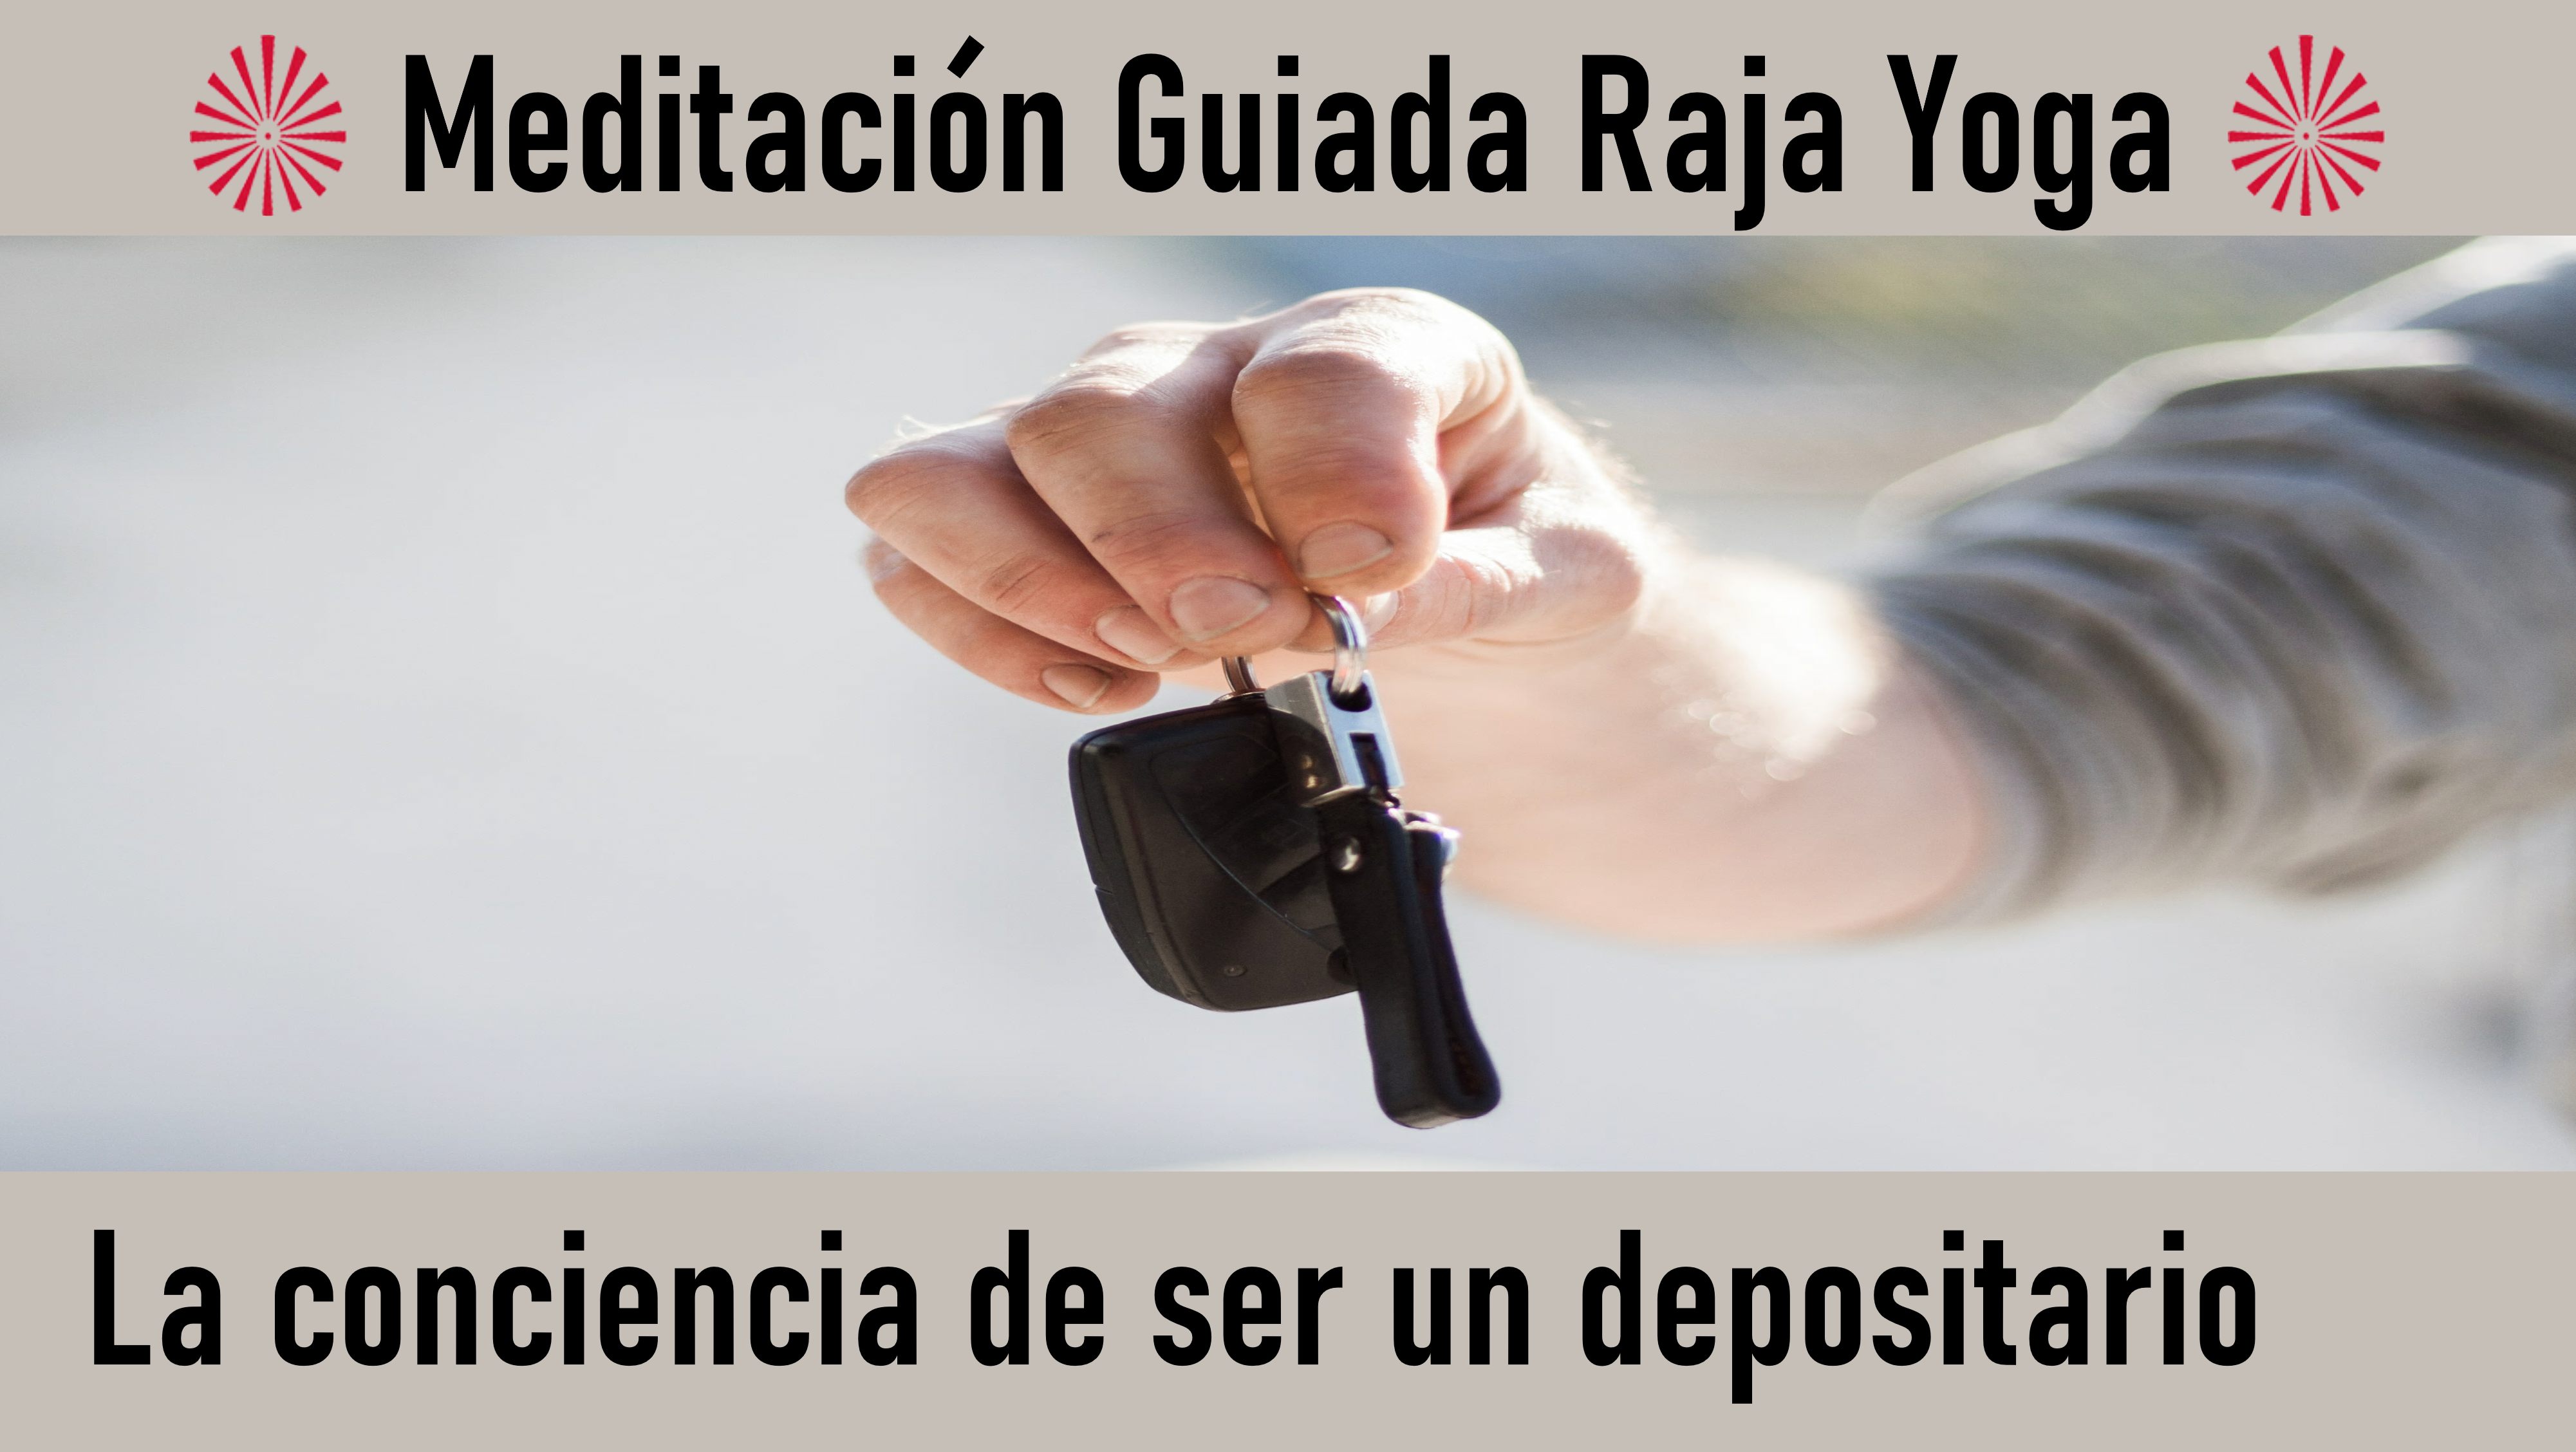 Meditación Raja Yoga: La conciencia de ser un depositario (16 Septiembre 2020) On-line desde Madrid